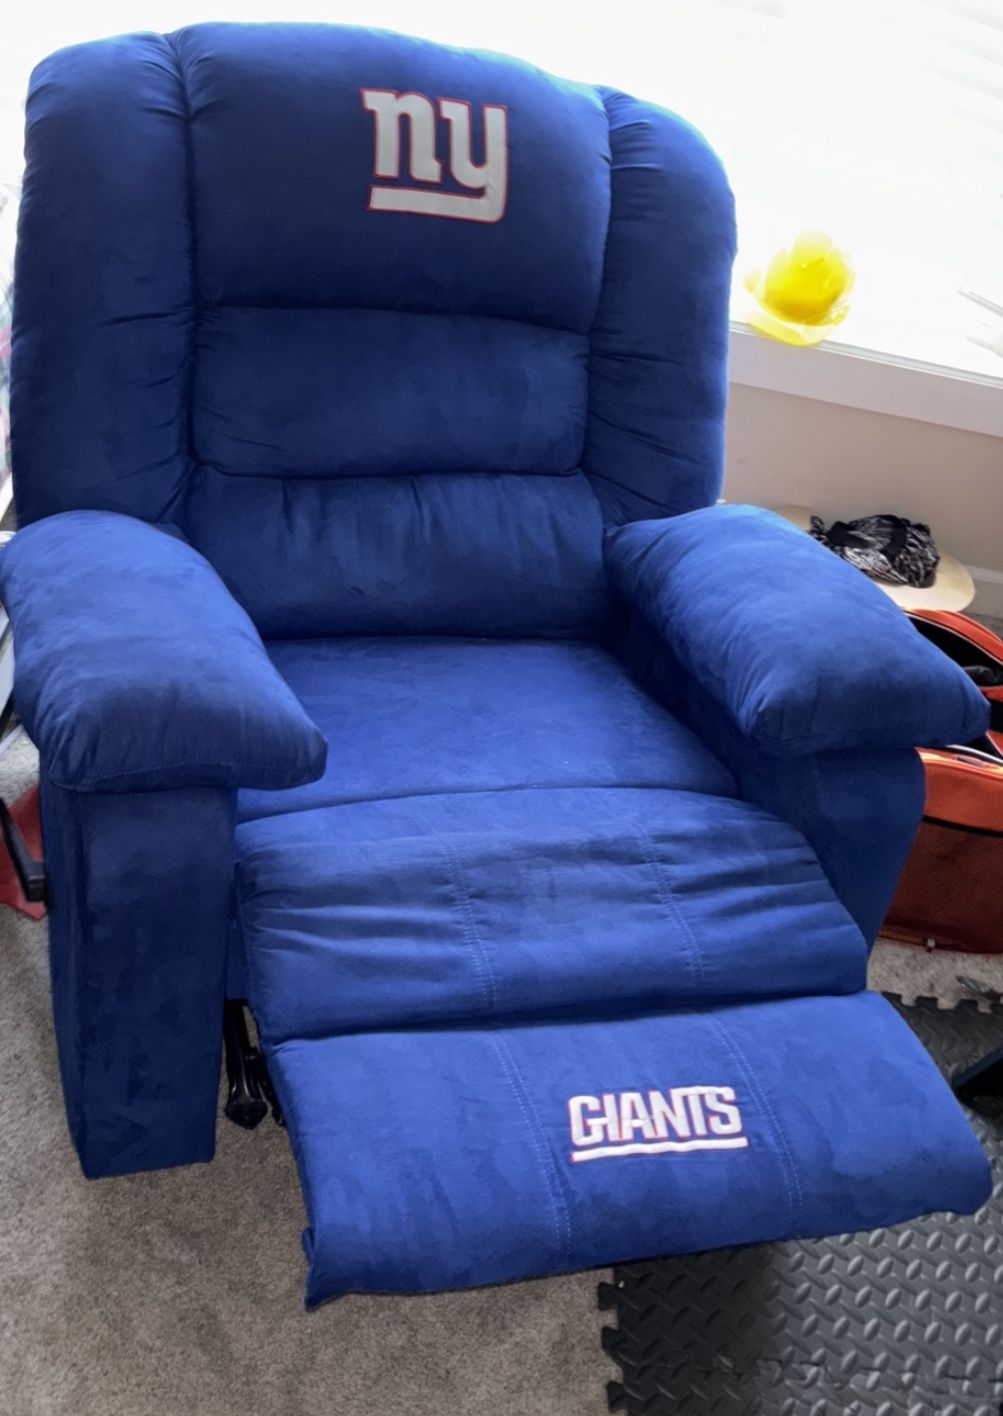 Giants Chair 